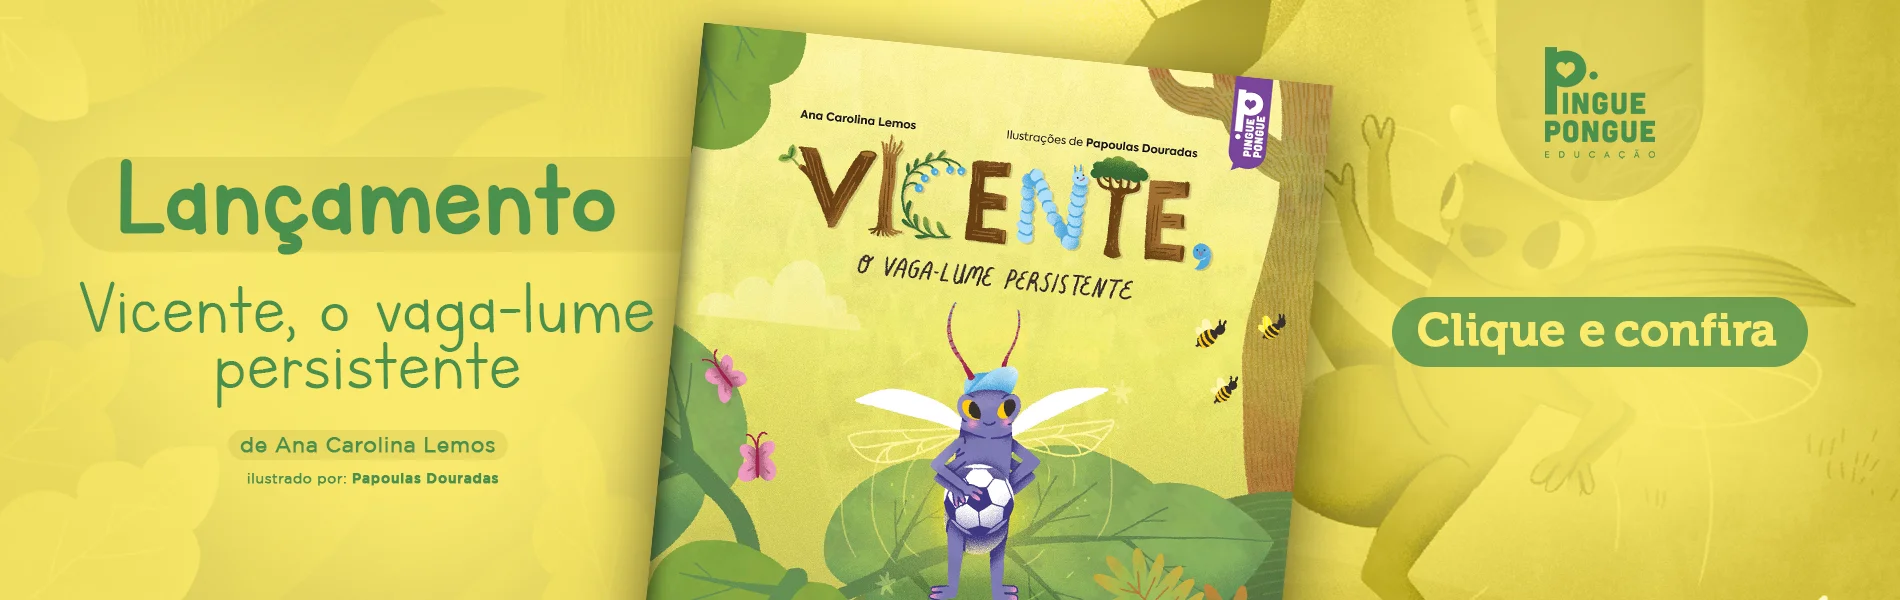 Banner de lançamento do livro Vicente, o vaga-lume persistente